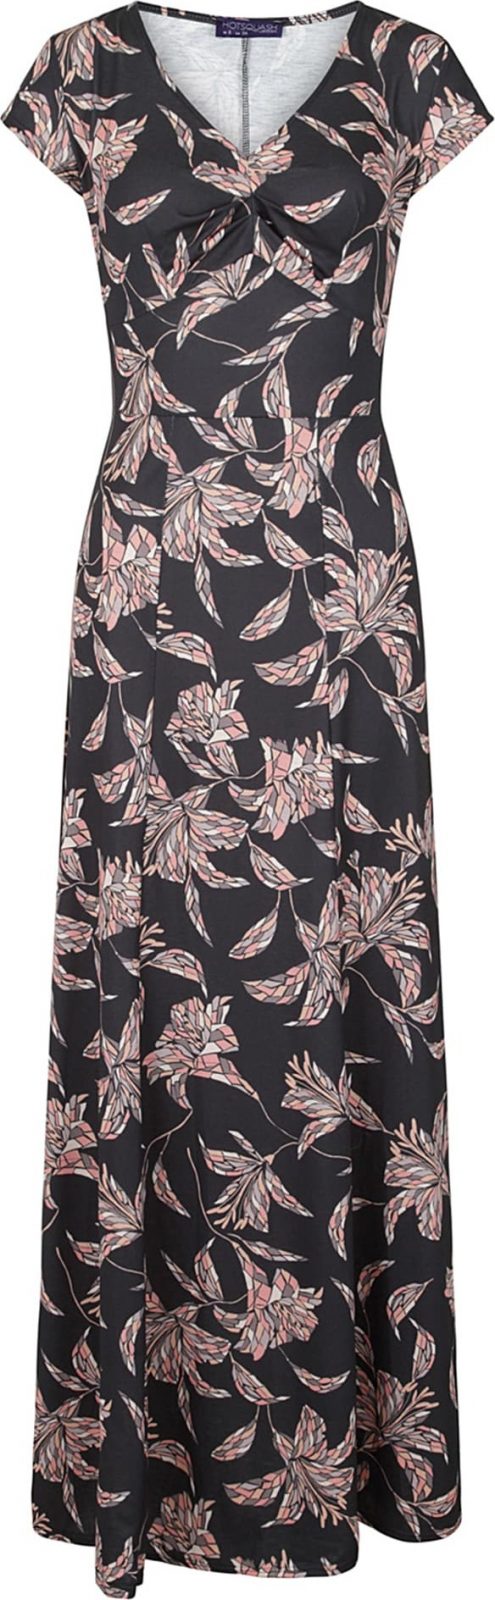 HotSquash Košilové šaty 'Gemma' černá / bílá / šedá / růžová / lenvandulová